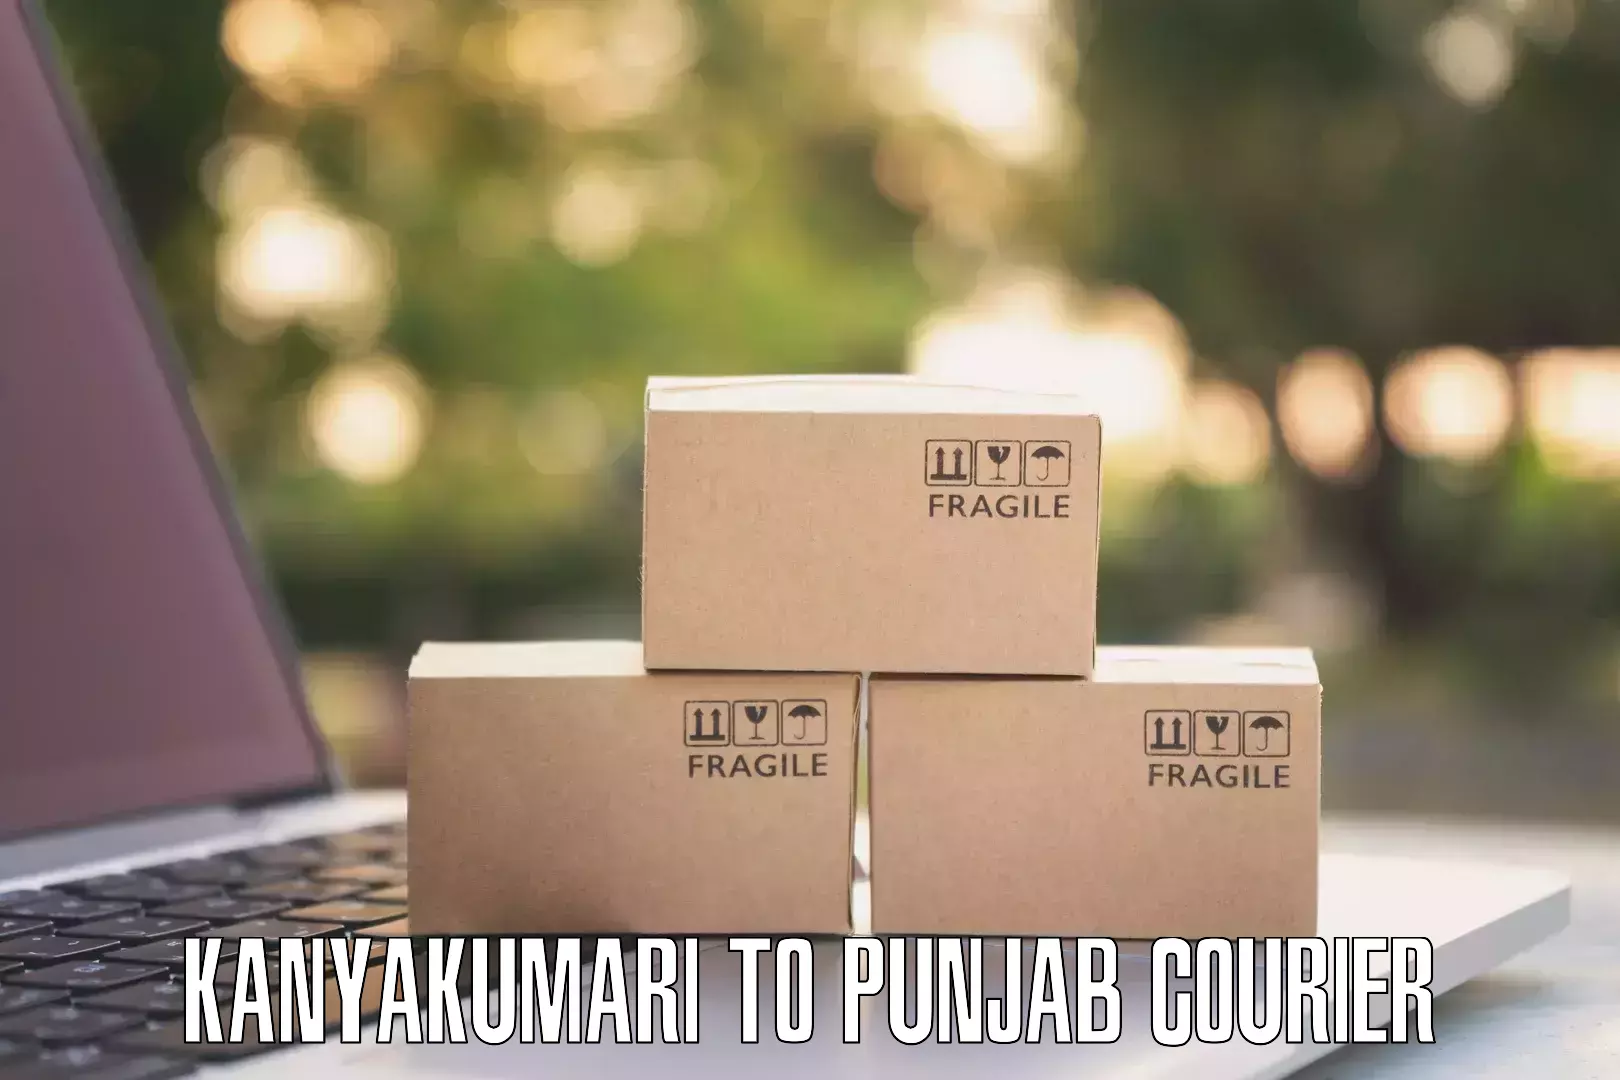 Premium courier services Kanyakumari to Mukerian